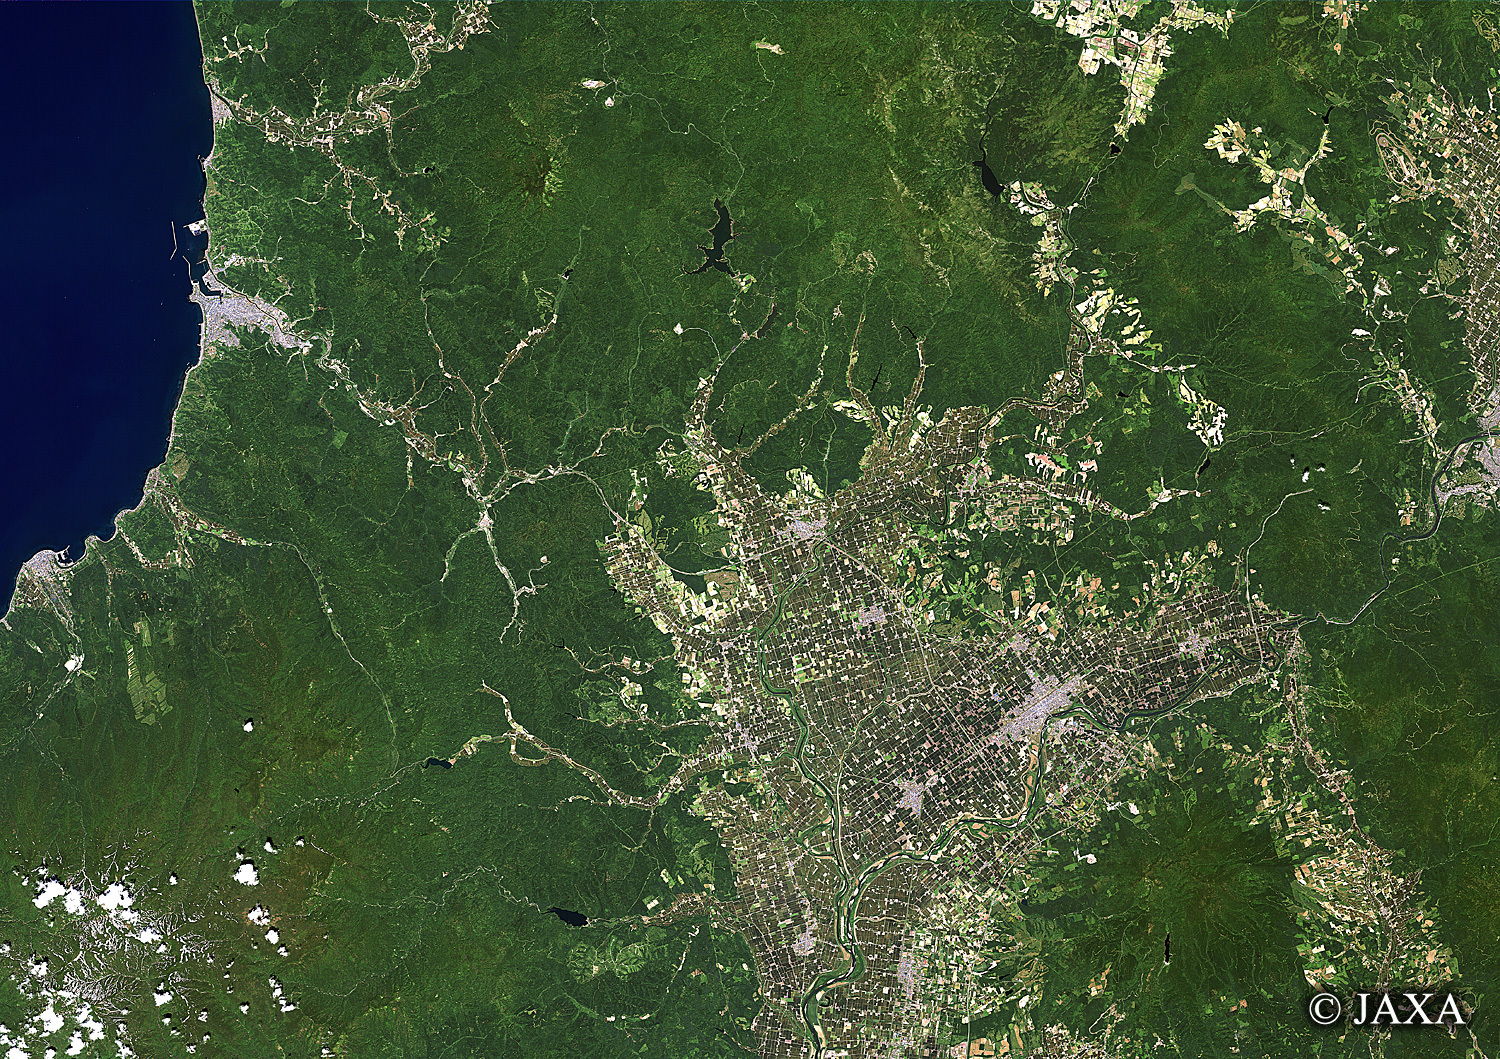 だいちから見た日本の都市 深川市:衛星画像